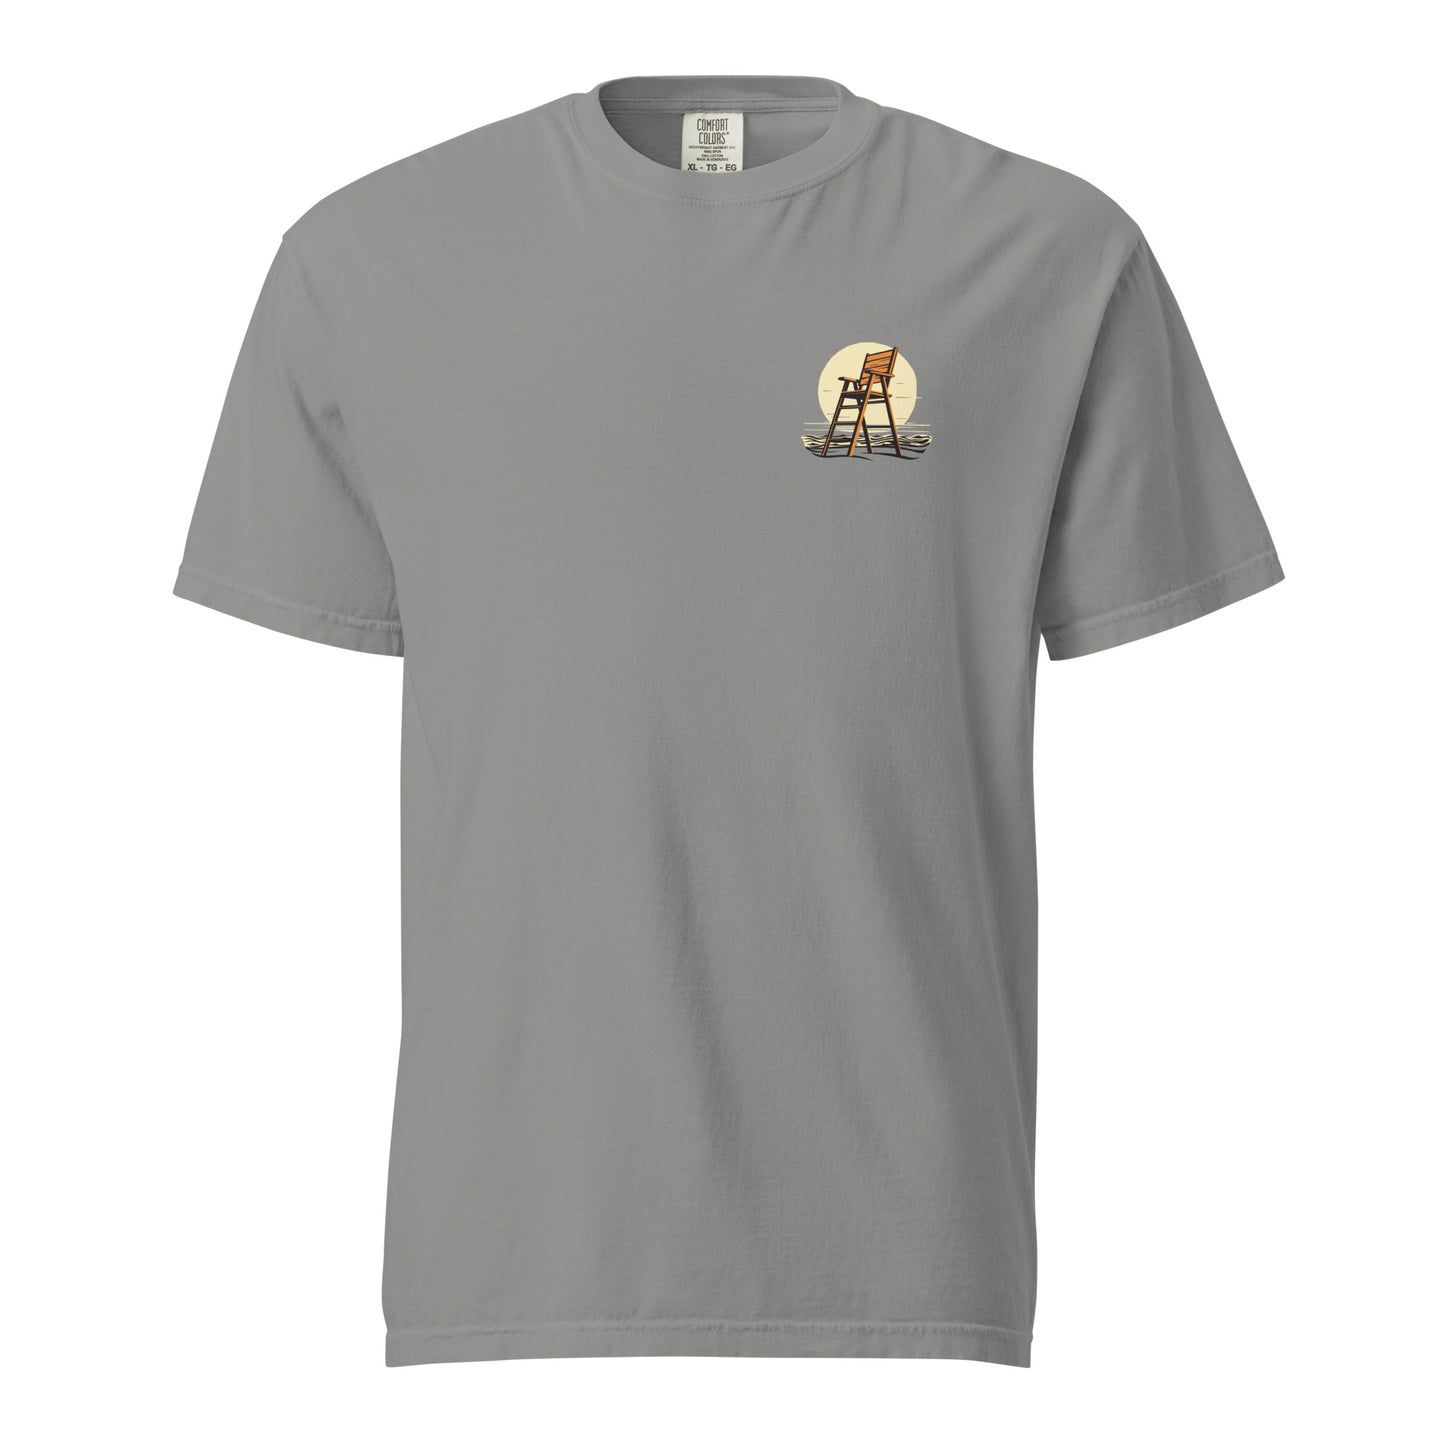 Bradley Beach Unisex garment-dyed heavyweight t-shirt